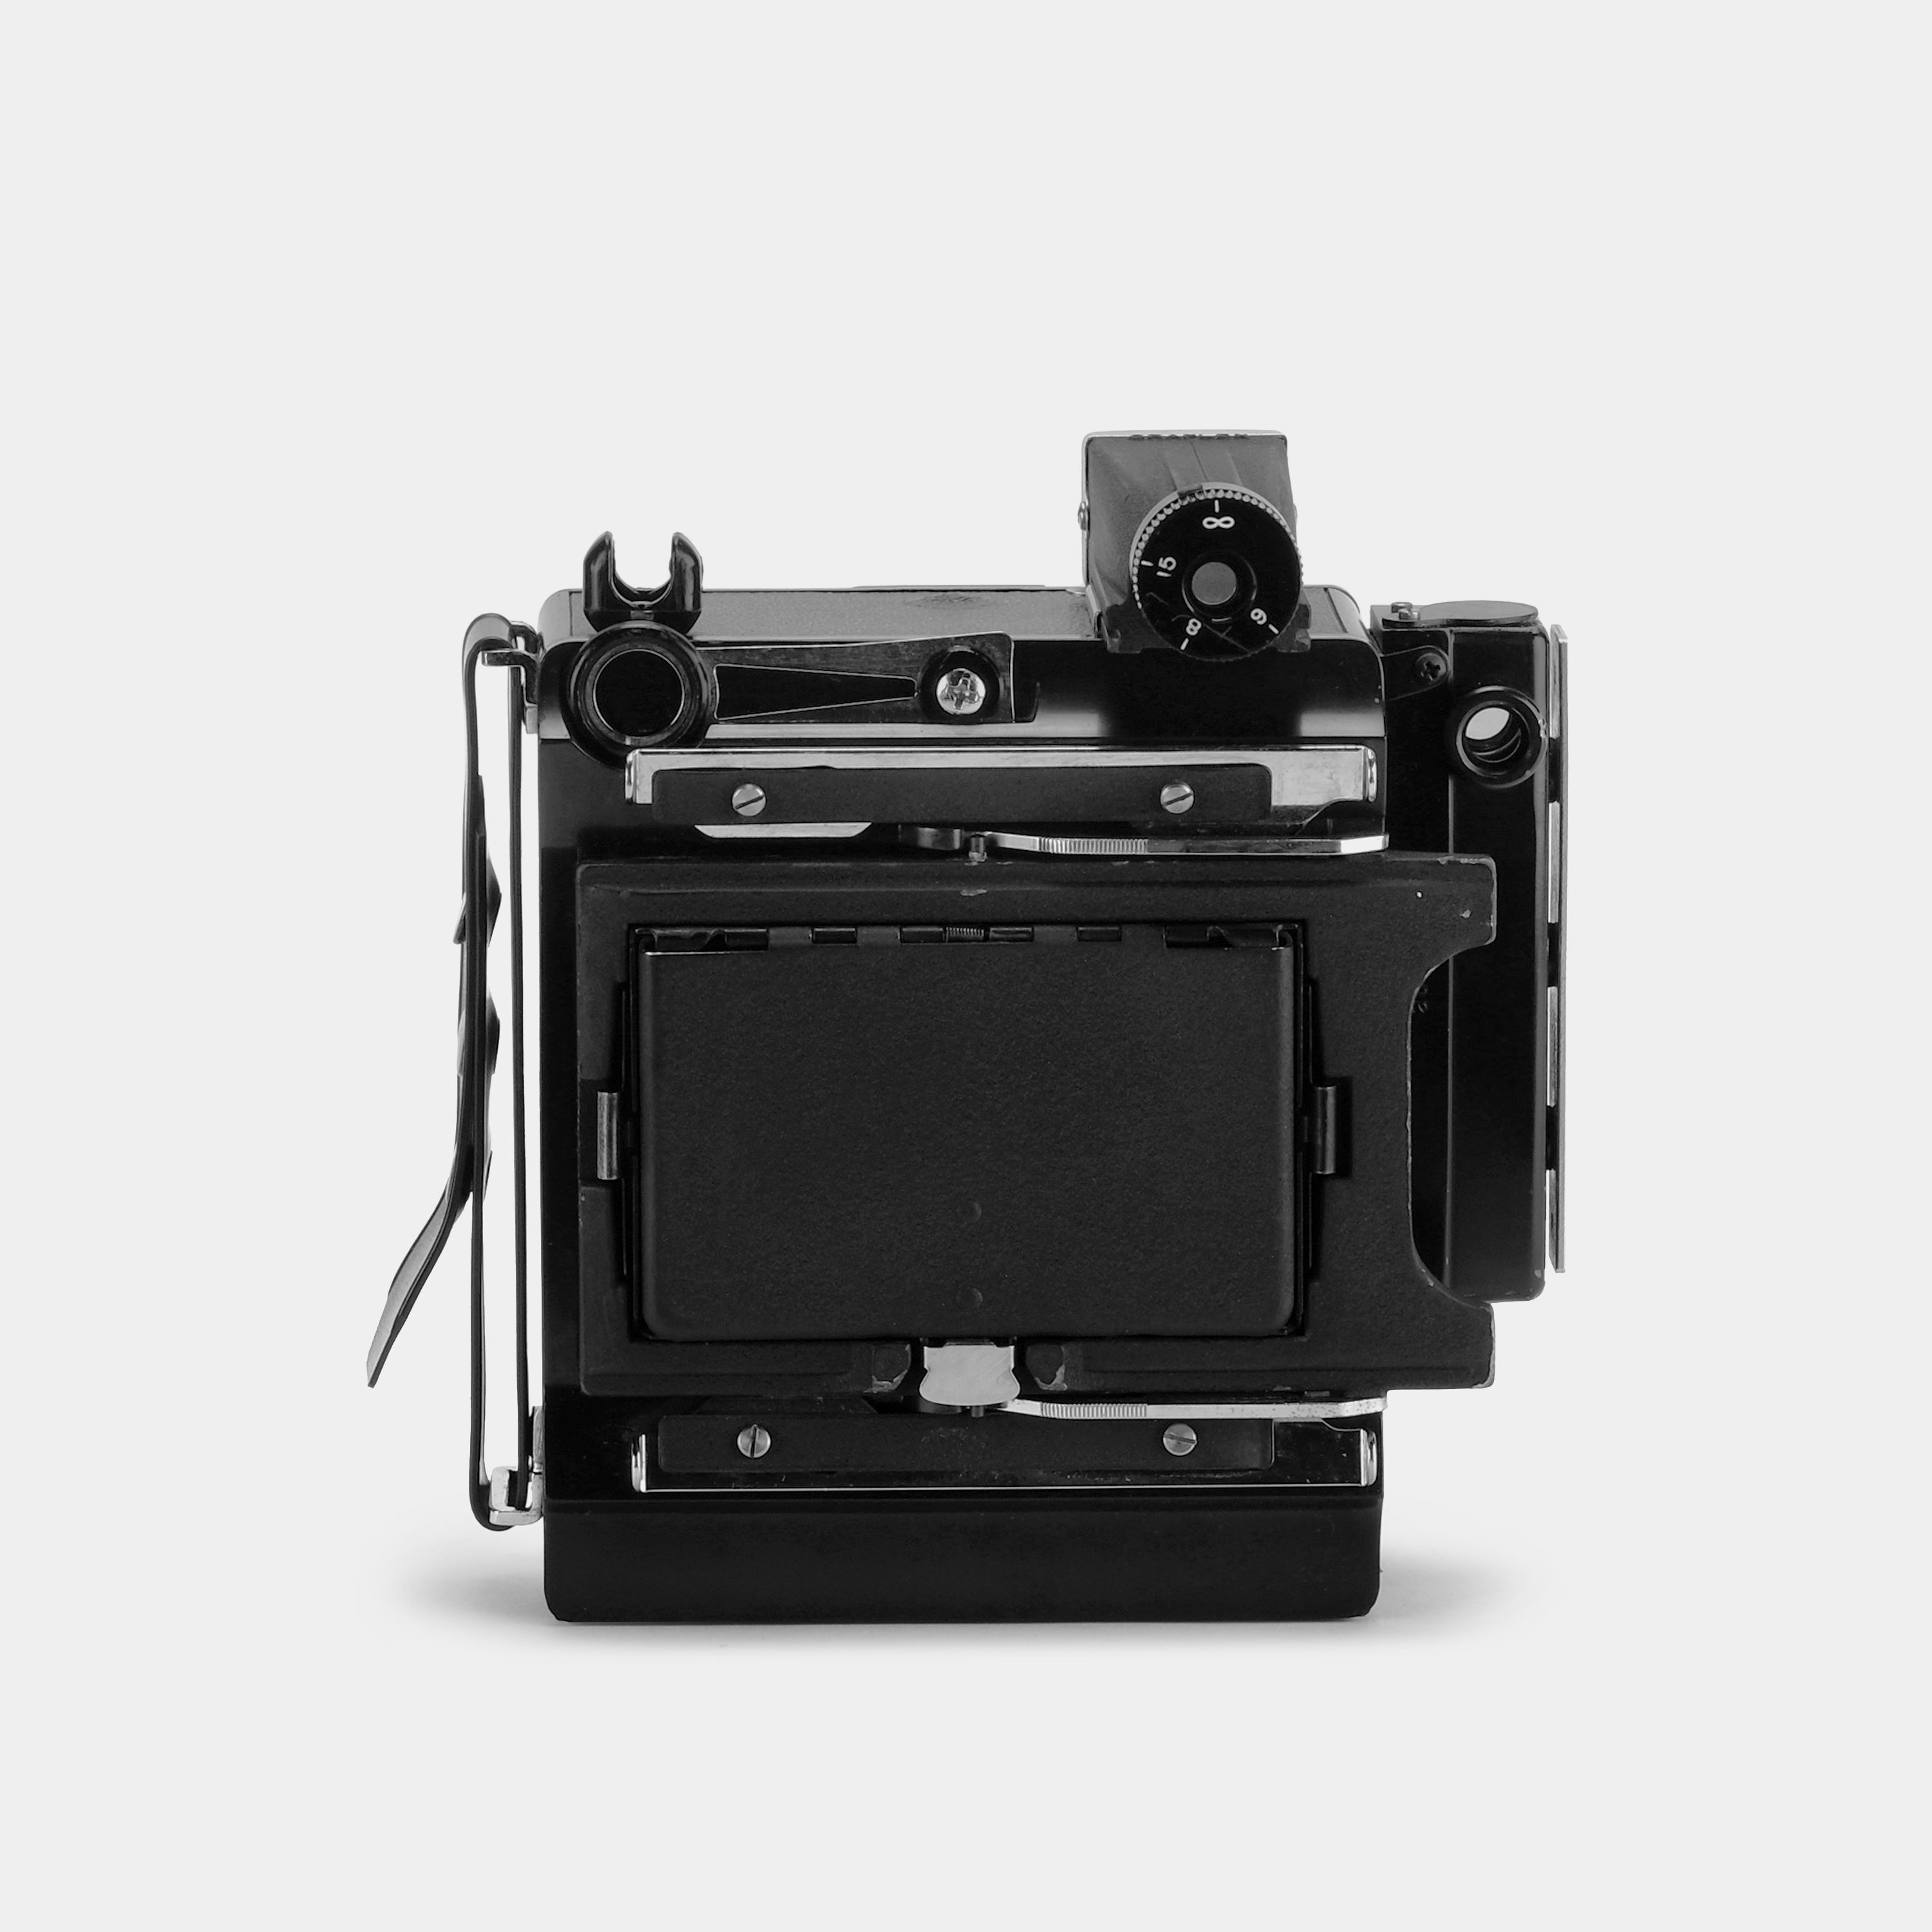 Graflex Century Graphic 2.25x3.25 in (6x9 cm) Film Camera